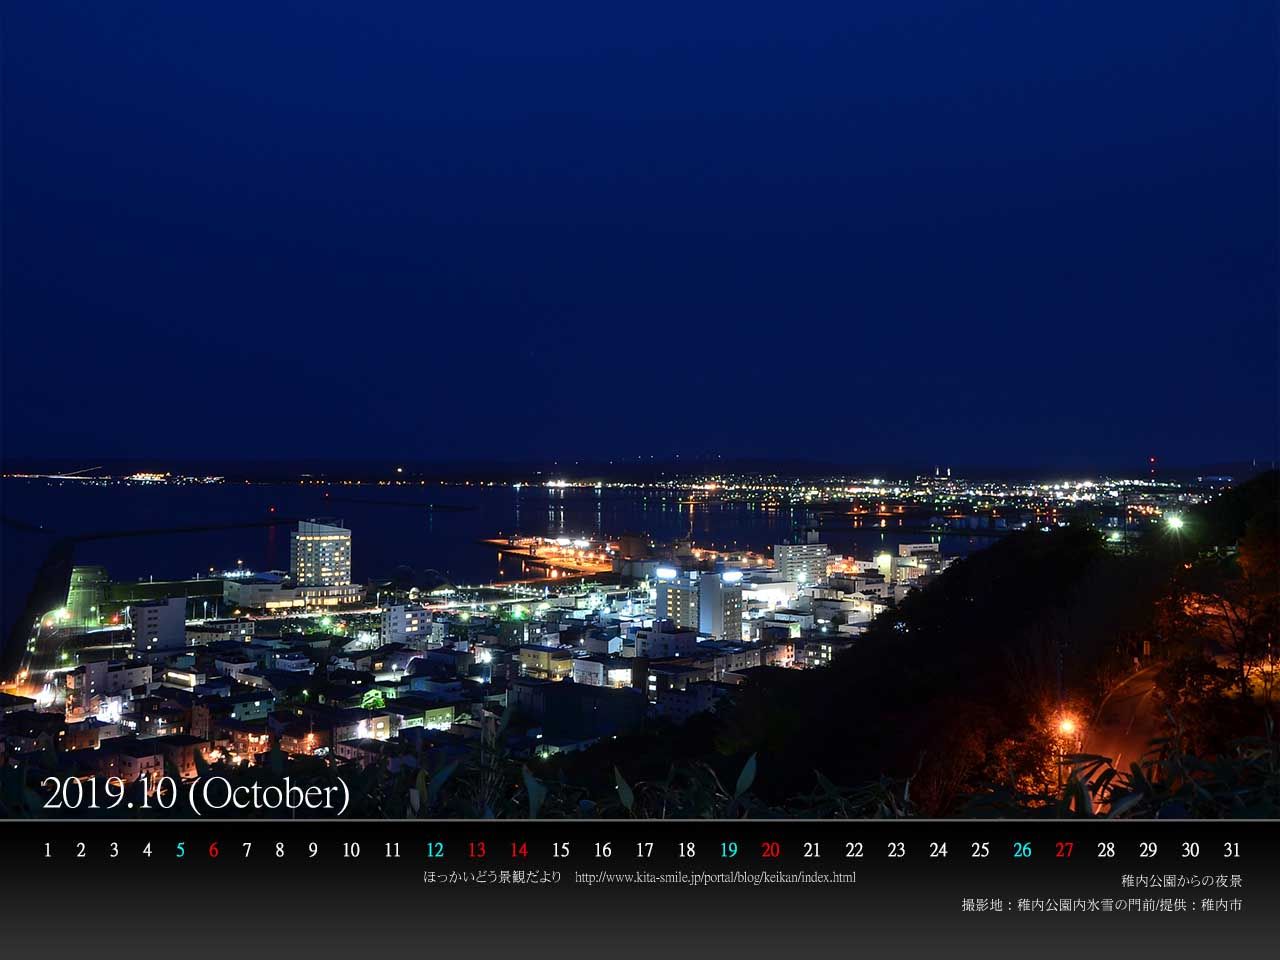 １０月は稚内市の 稚内公園からの夜景 です ｐｃ壁紙カレンダーを配布しています 北海道庁のブログ 超 旬ほっかいどう 楽天ブログ